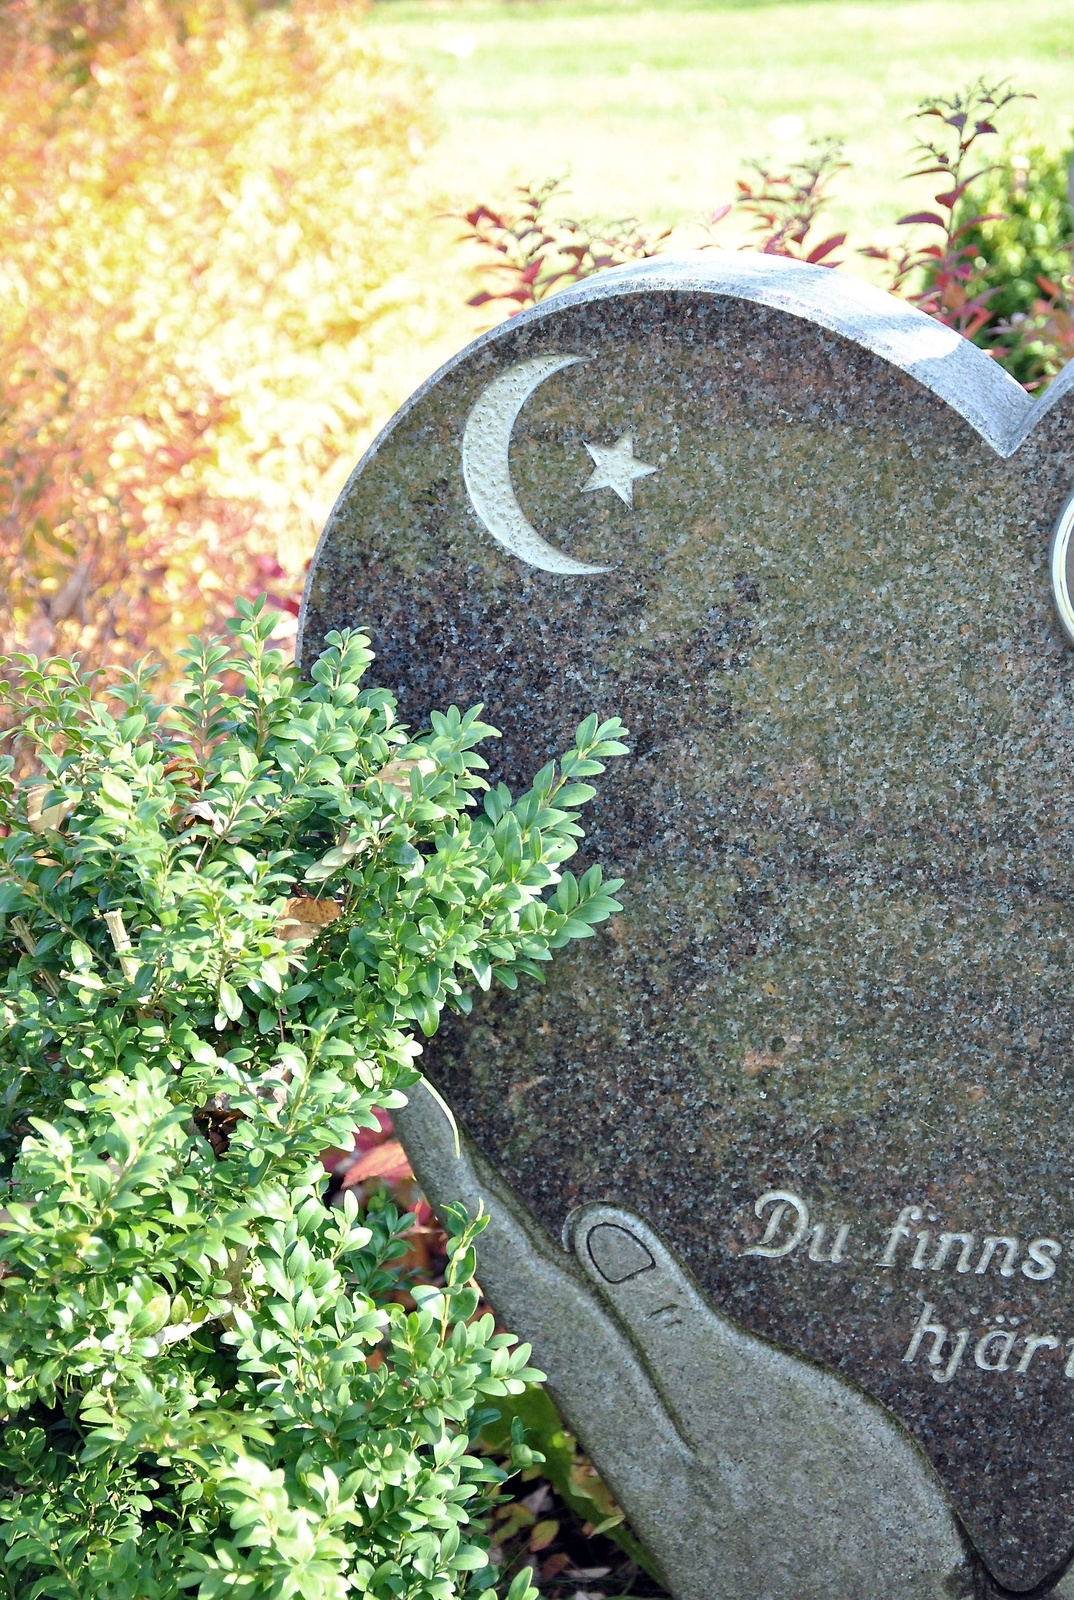 På Norra kyrkogården i Stoby finns även muslimsk gravplats, med halvmåne och stjärna på gravstenen.
Foto: Marie Strömberg Andersson